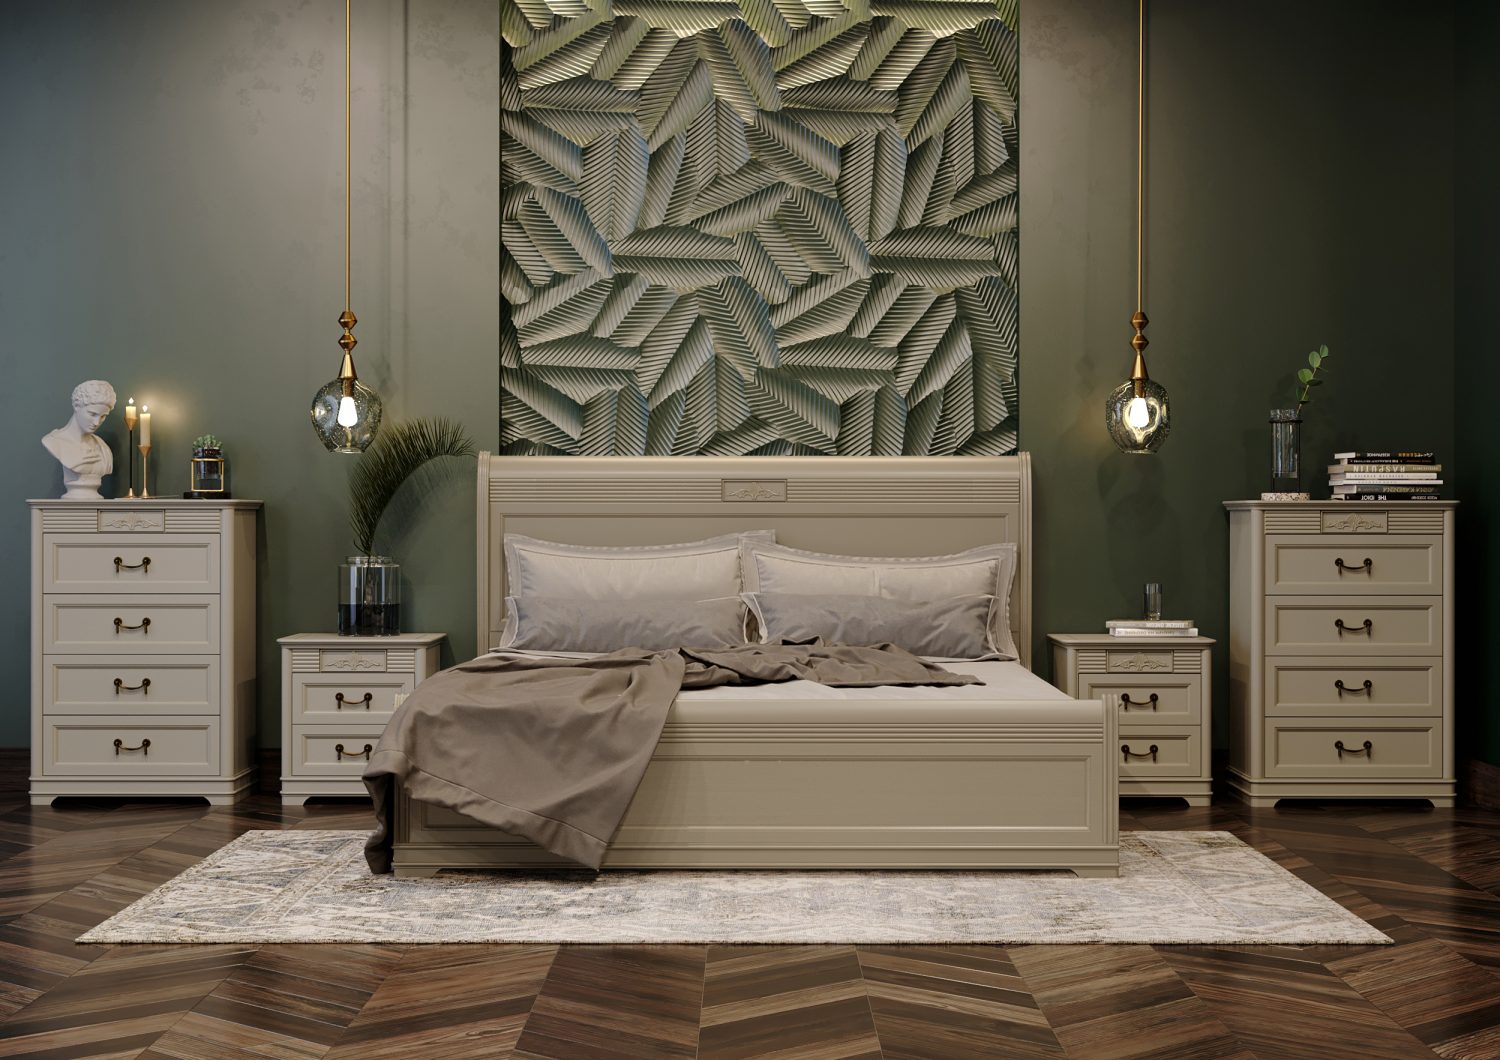 Кровать с твердым деревянным изголовьем, изножье на цоколе. Спальня Тоскана от торговой марки Италконцепт